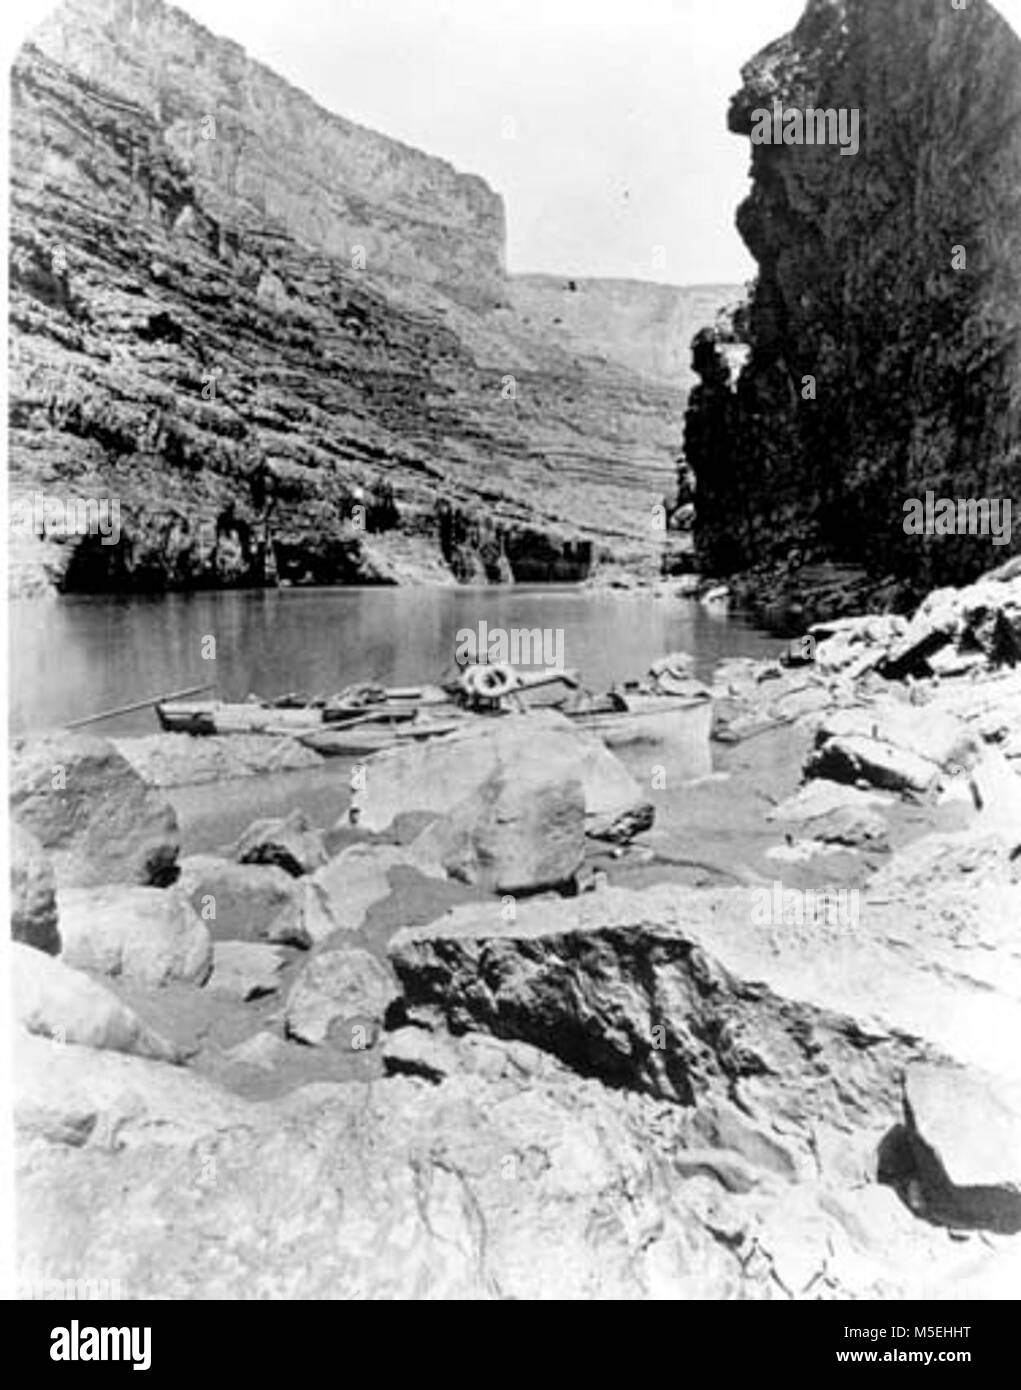 Grand Canyon Powell Expedition BOOTE VON POWELL'S ZWEITE EXPEDITION IN DEN Marble Canyon. Sessel und leben die LICHTFORMEN. CIRCA 1872. Stockfoto